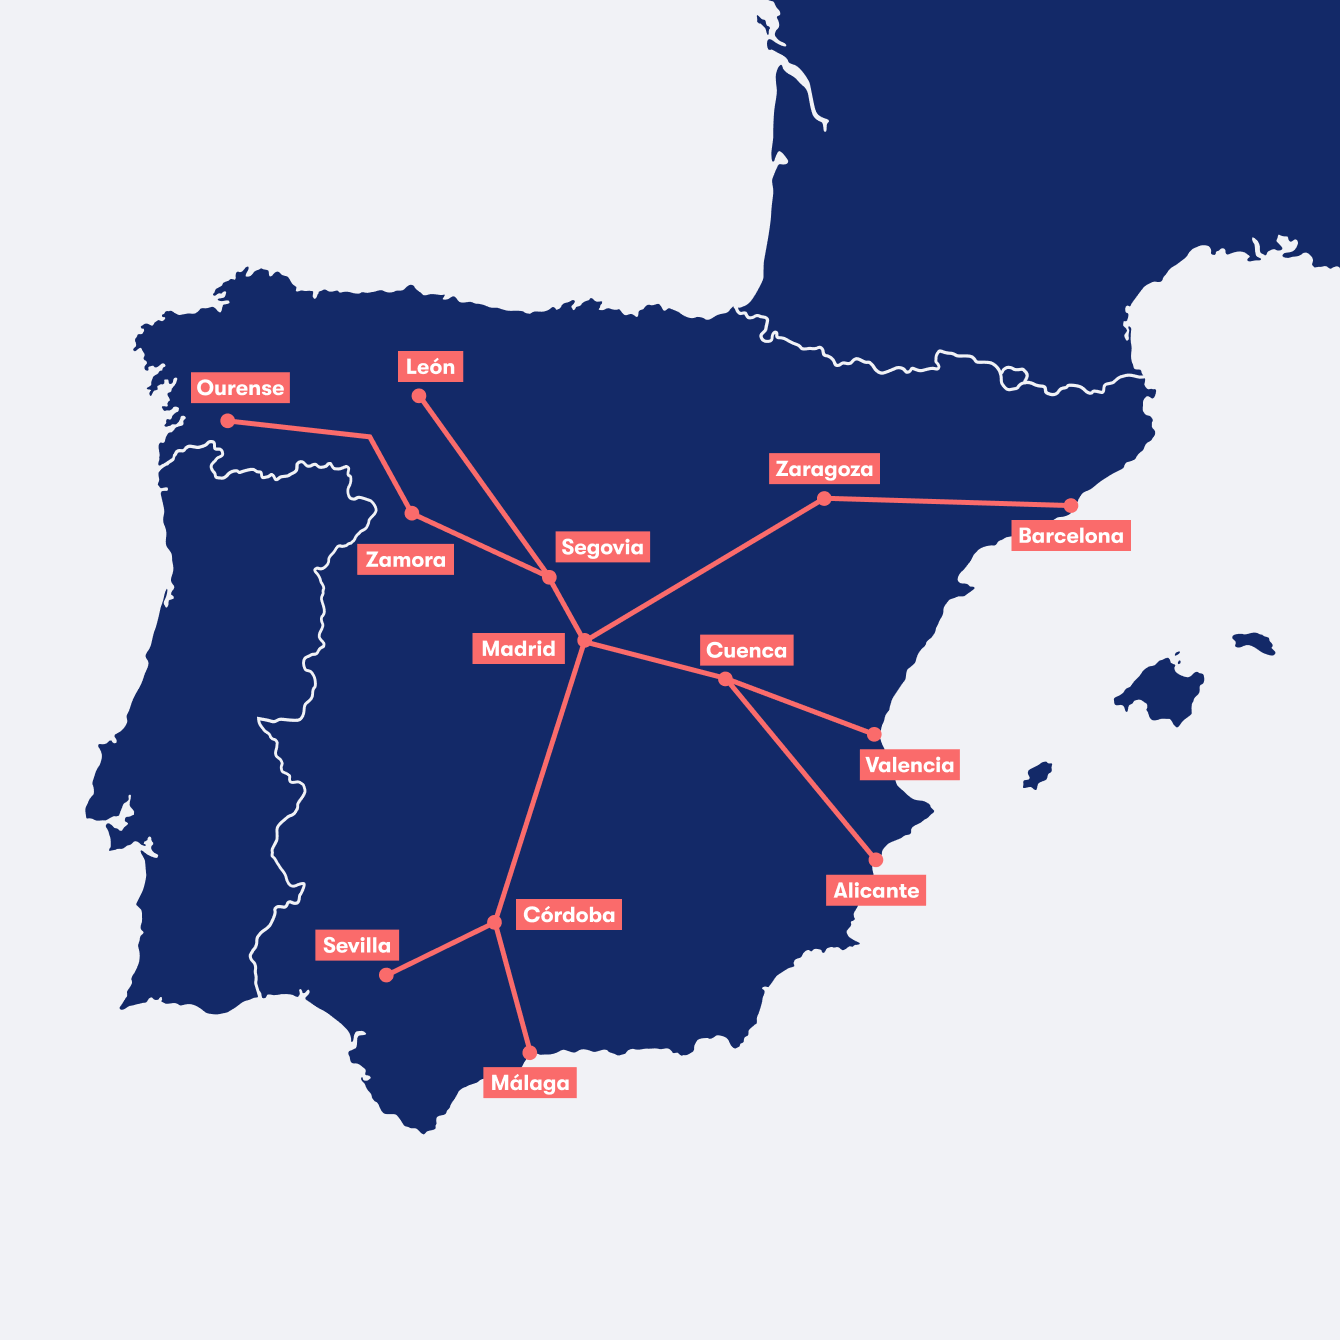 mapa del tren espana